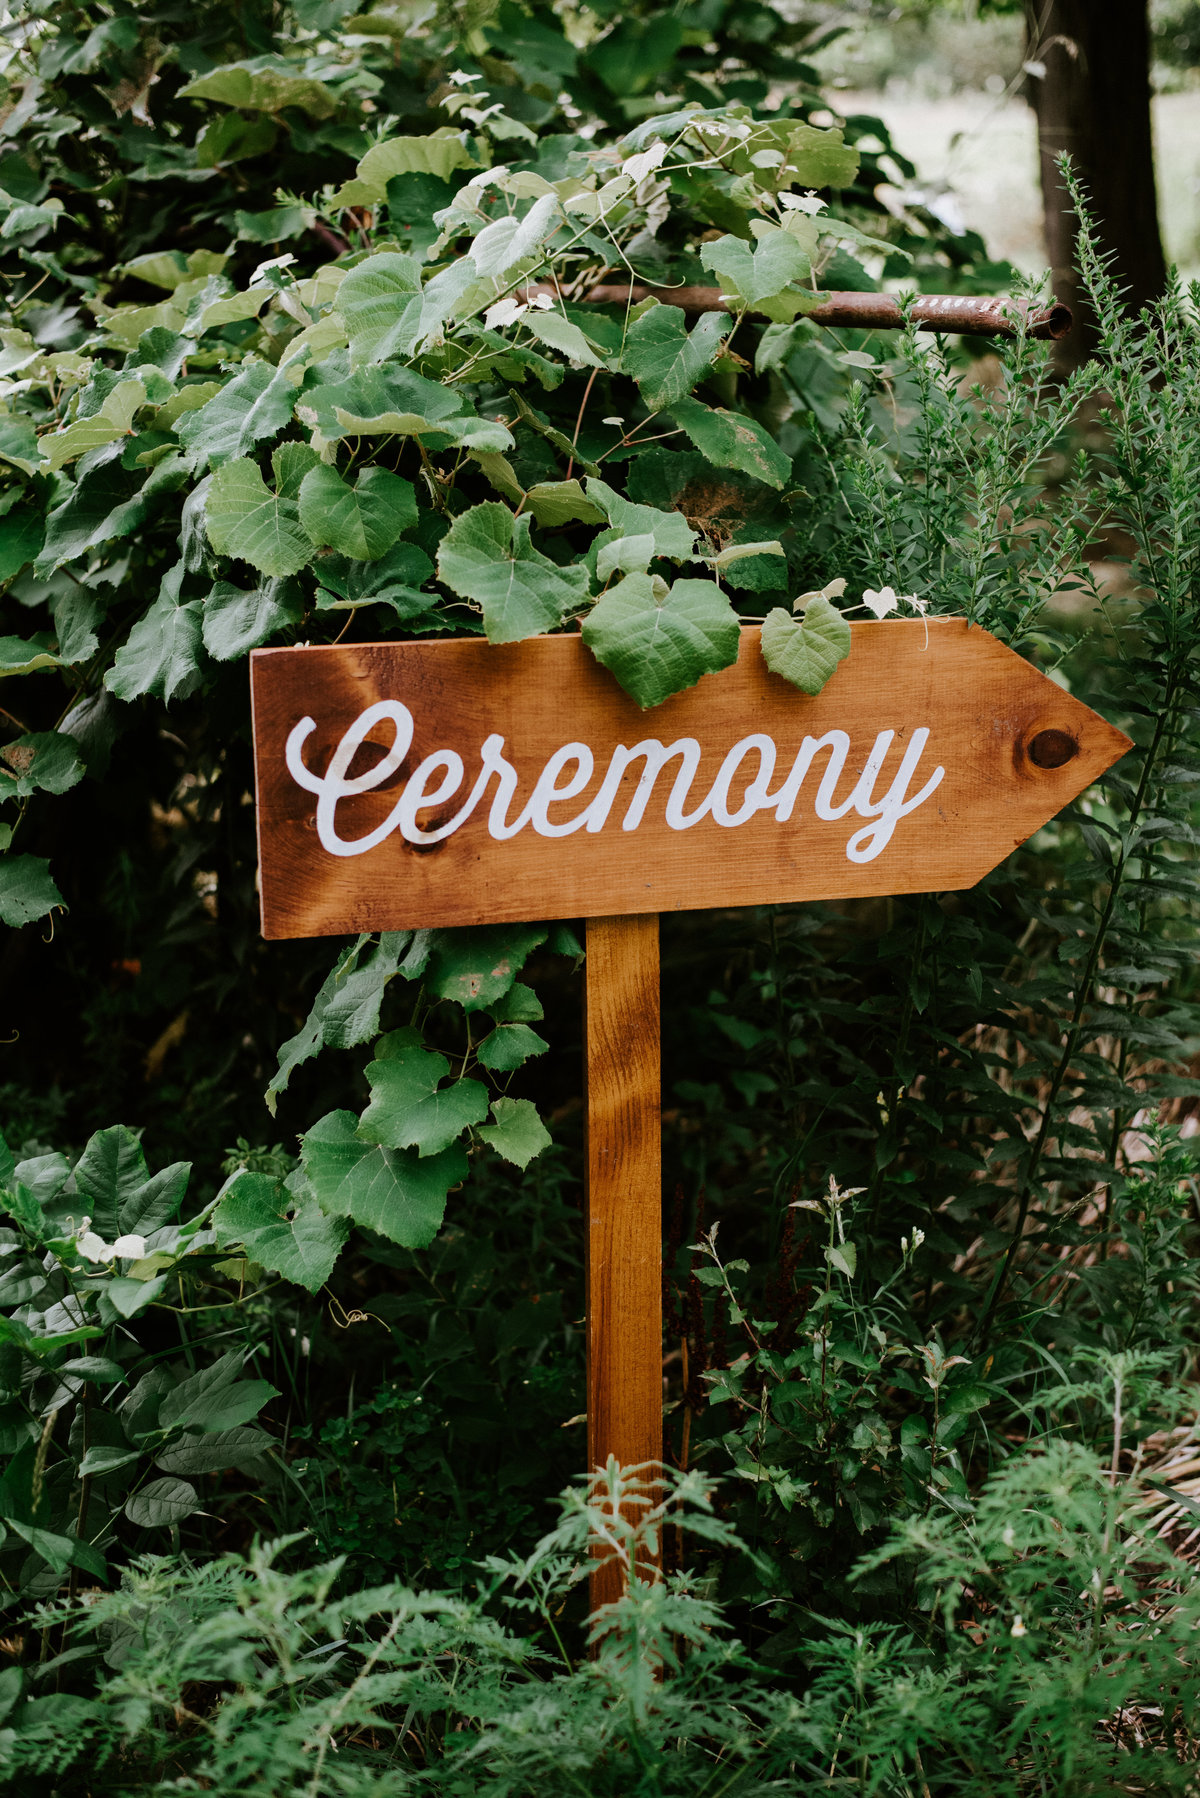 Ceremony-1